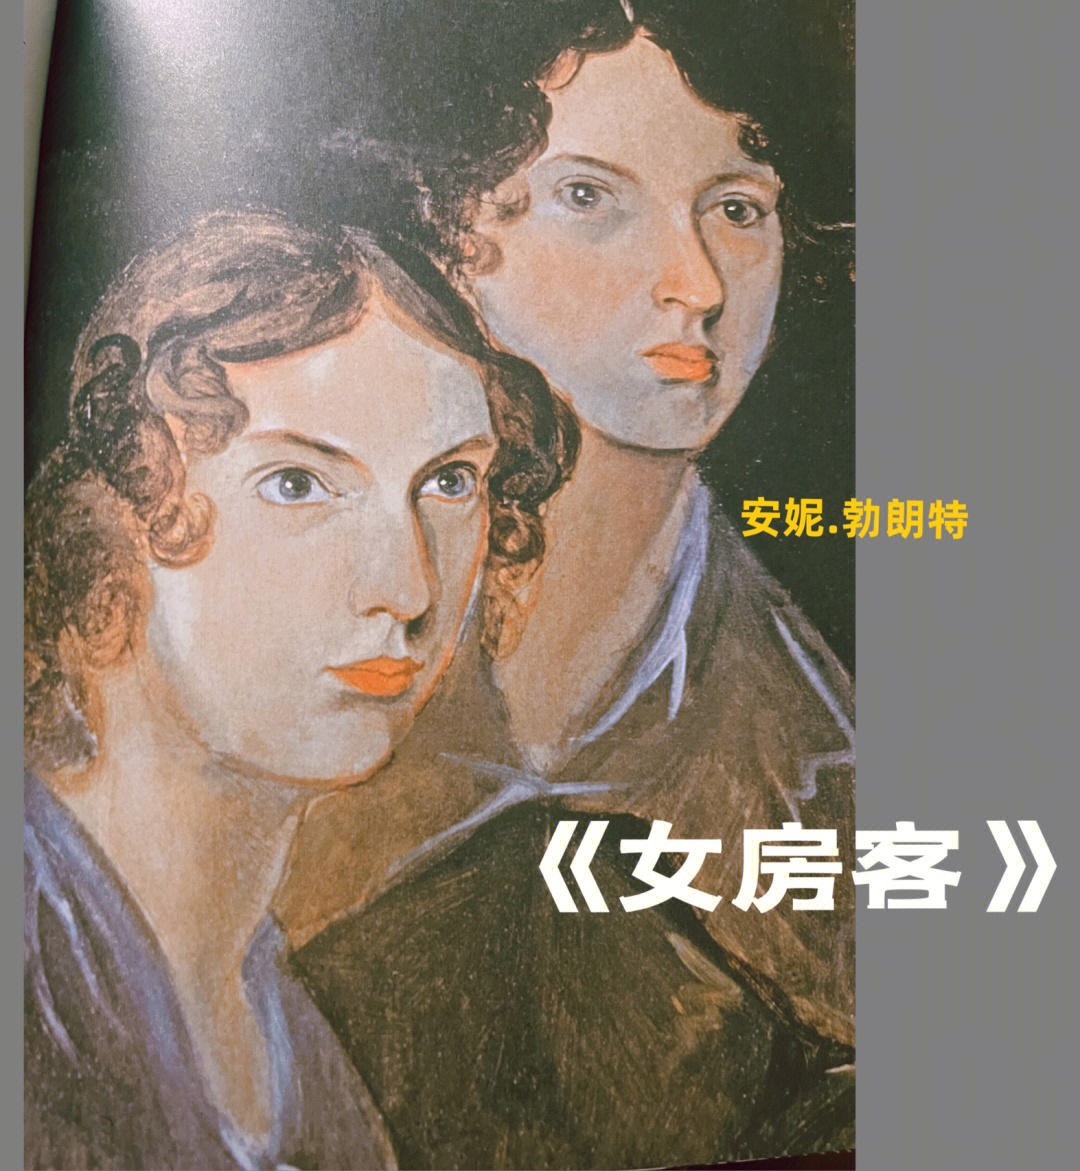 《女房客》是作家安妮勃朗特的作品,是英国著名勃朗特三姐妹之一